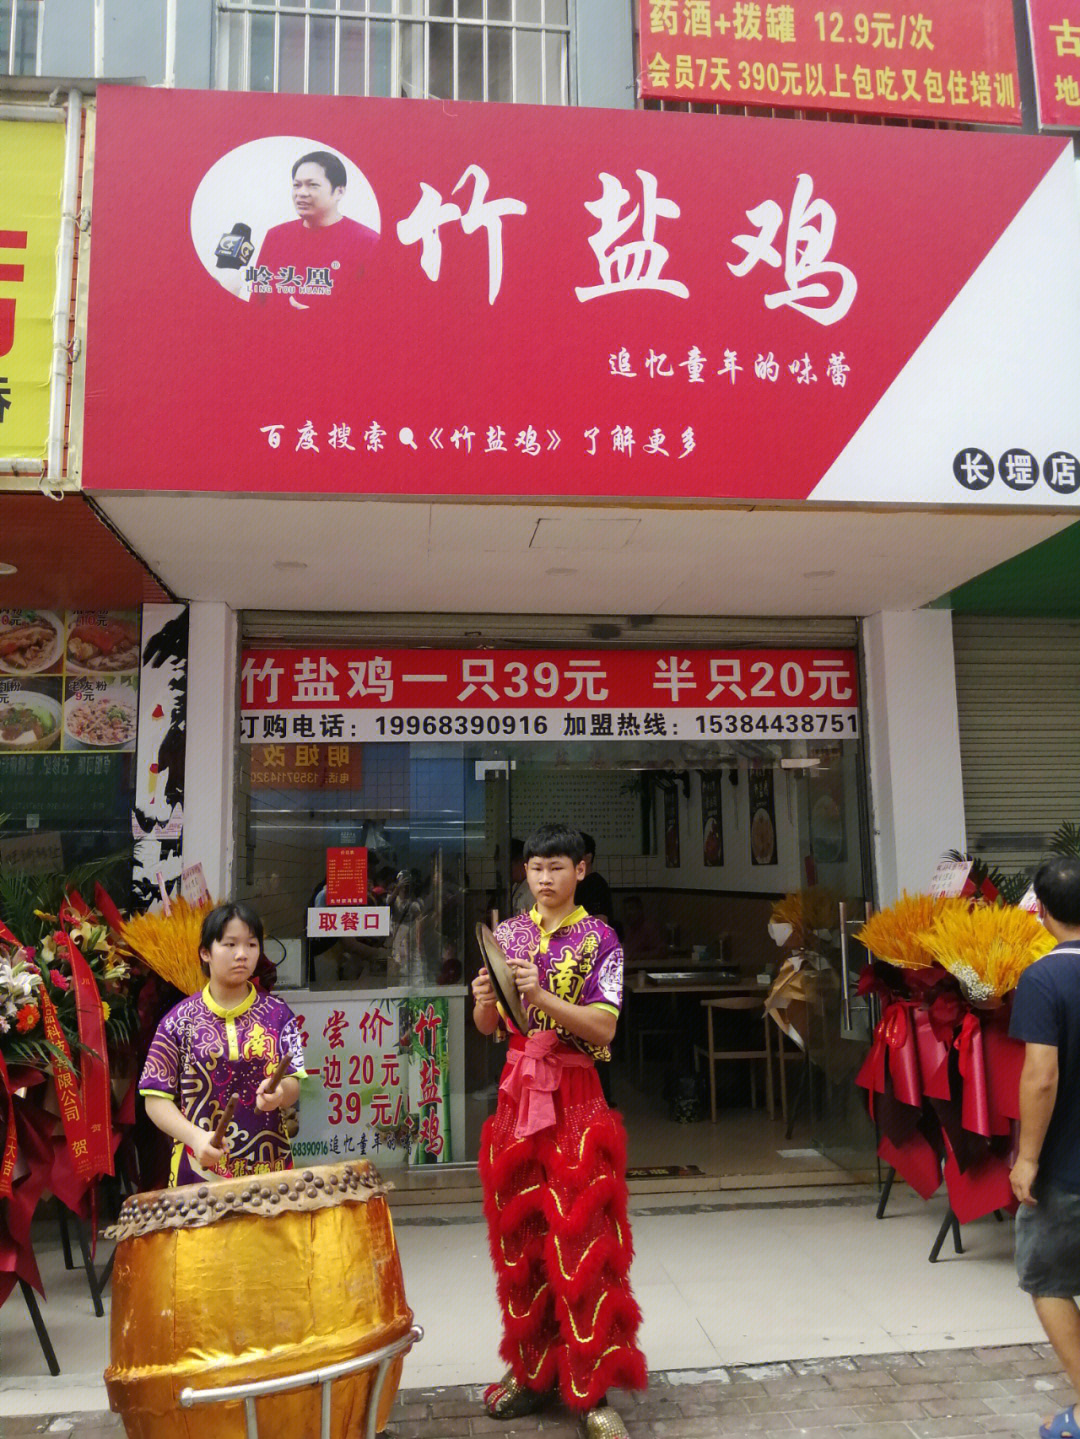 一直以来,走红南宁的岭头凰竹盐鸡在南宁其他城区开了多家分店